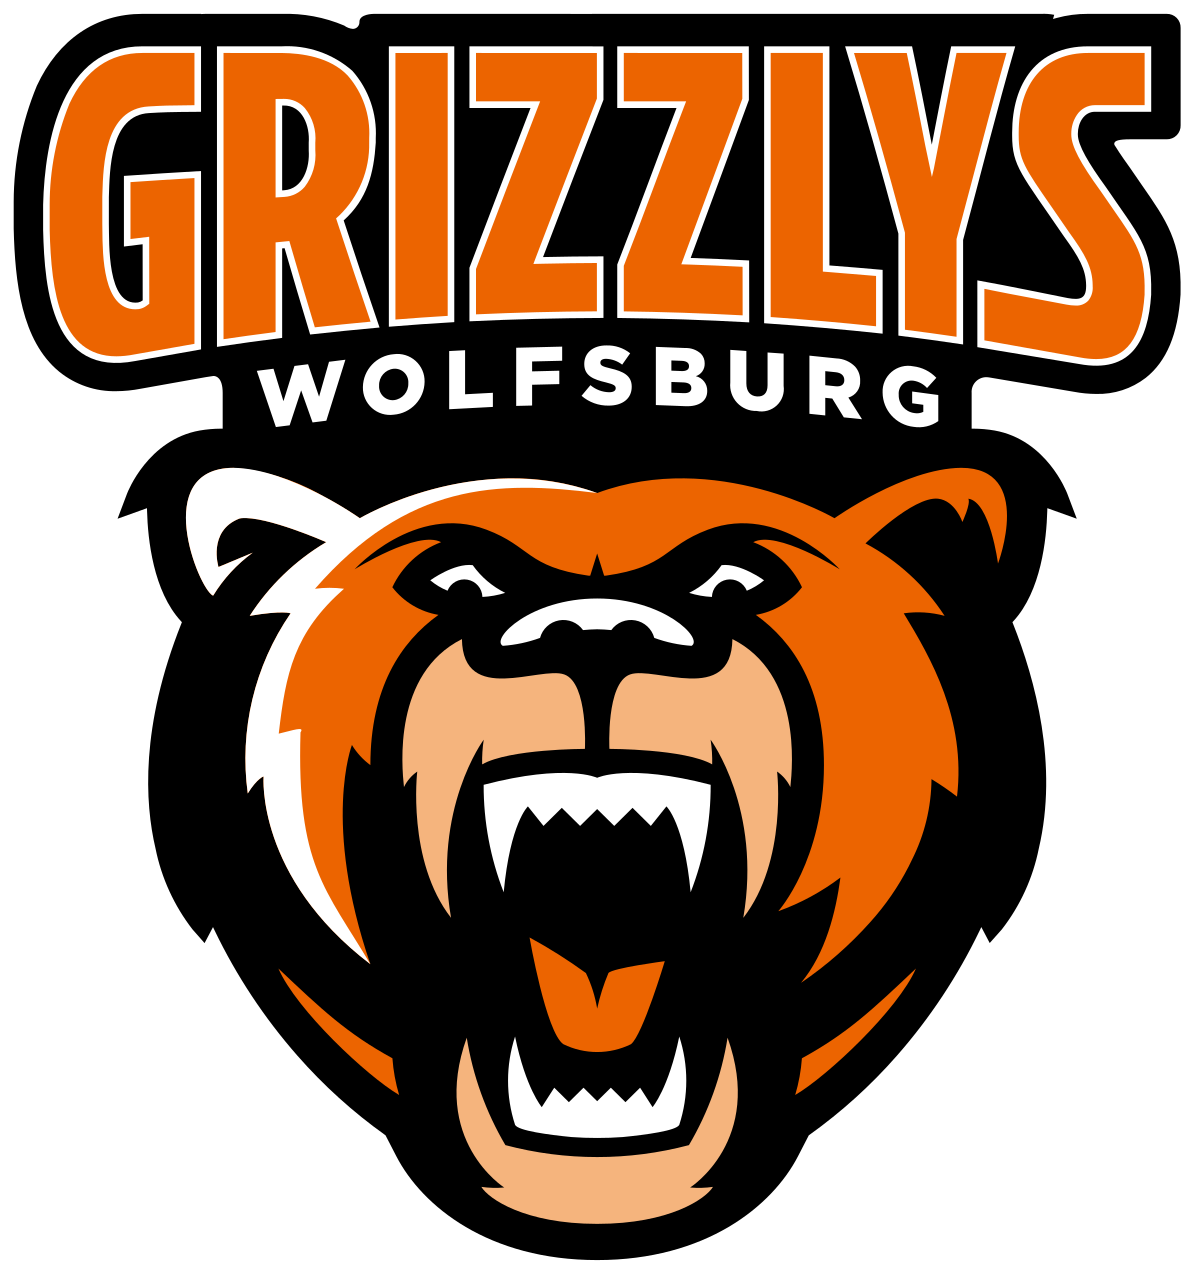 Grizzlys Wolfsburg-team-logo